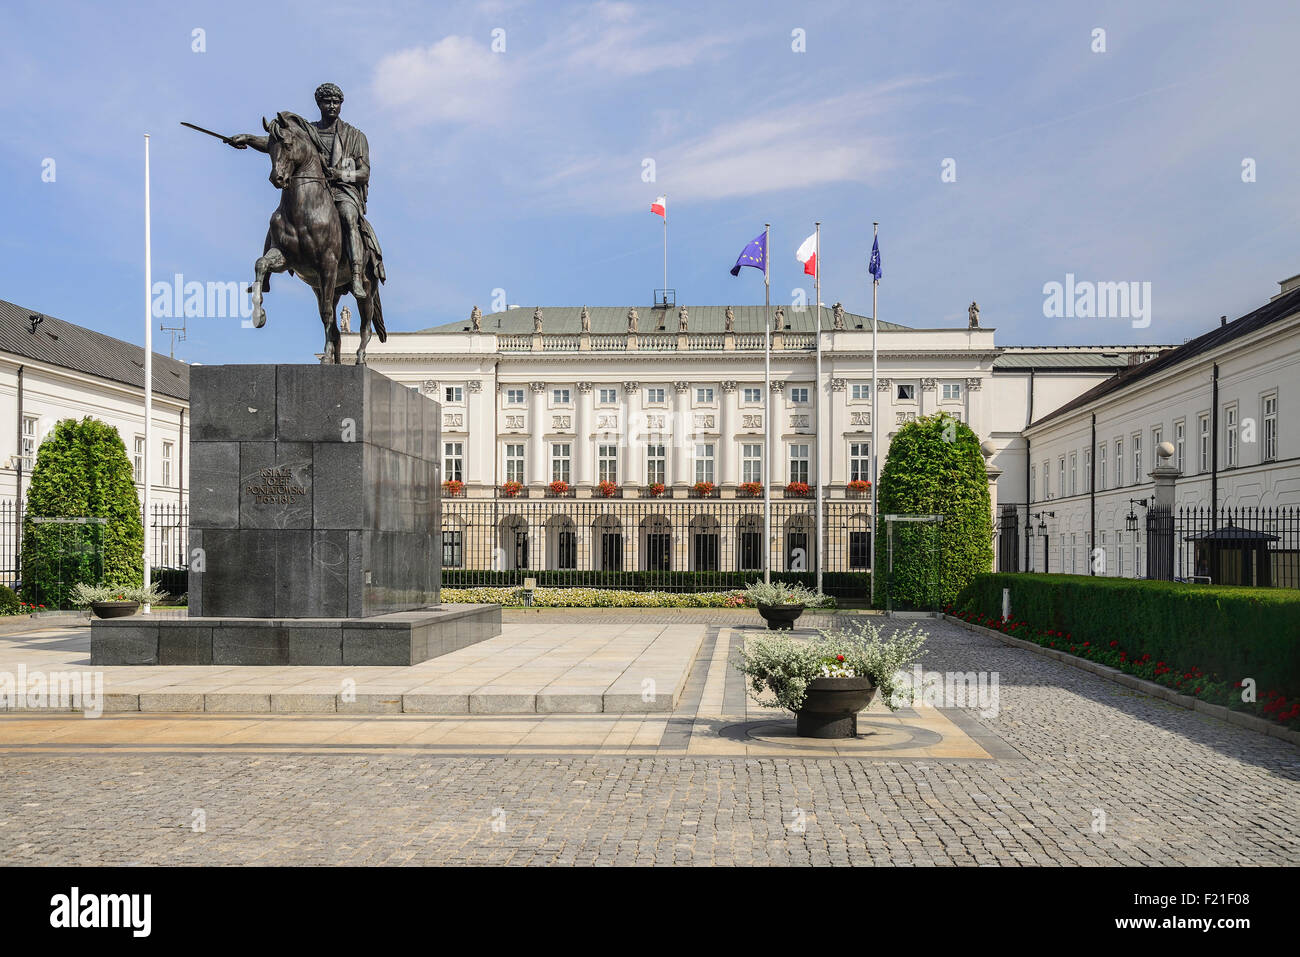 Polen Warschau Ul Krakowskie Przedmiescie oder der königliche Weg Radziwill Palast Residenz des Präsidenten mit einer Statue des Prinzen Stockfoto